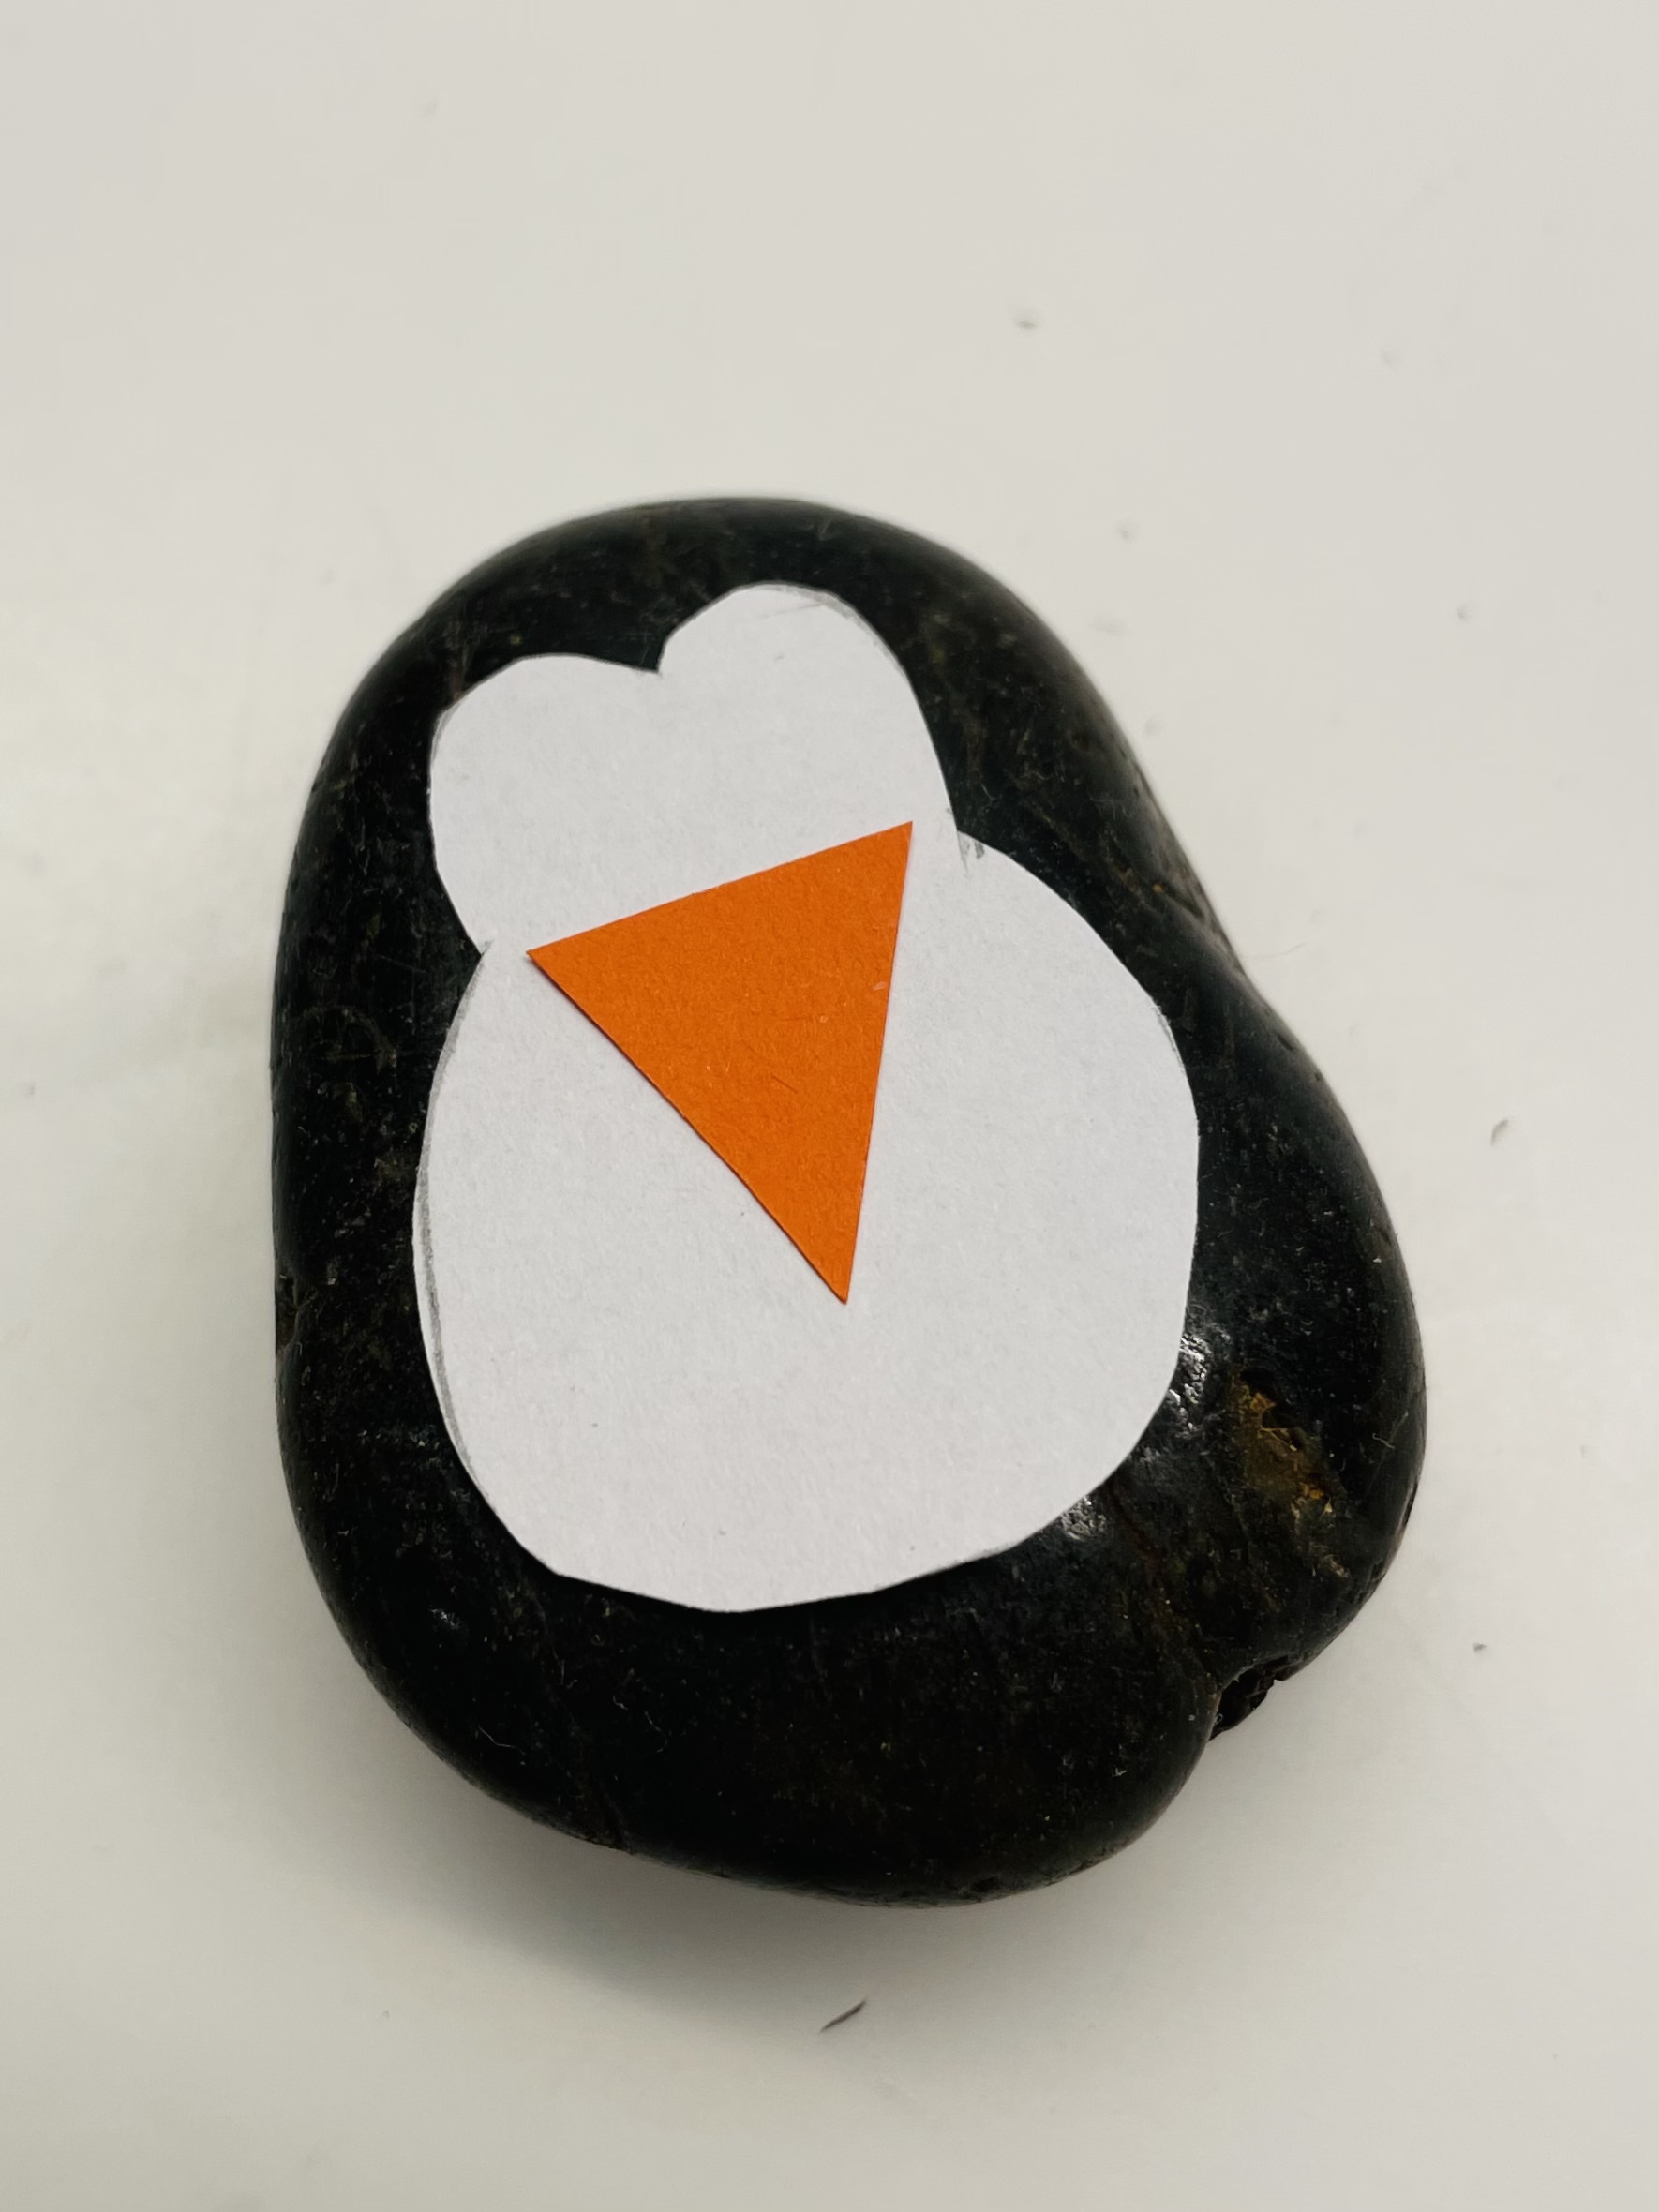 Bild zum Schritt 3 für das Bastel- und DIY-Abenteuer für Kinder: 'Danach schneidet ihr ein kleines orangefarbenes Dreieck aus und legt...'